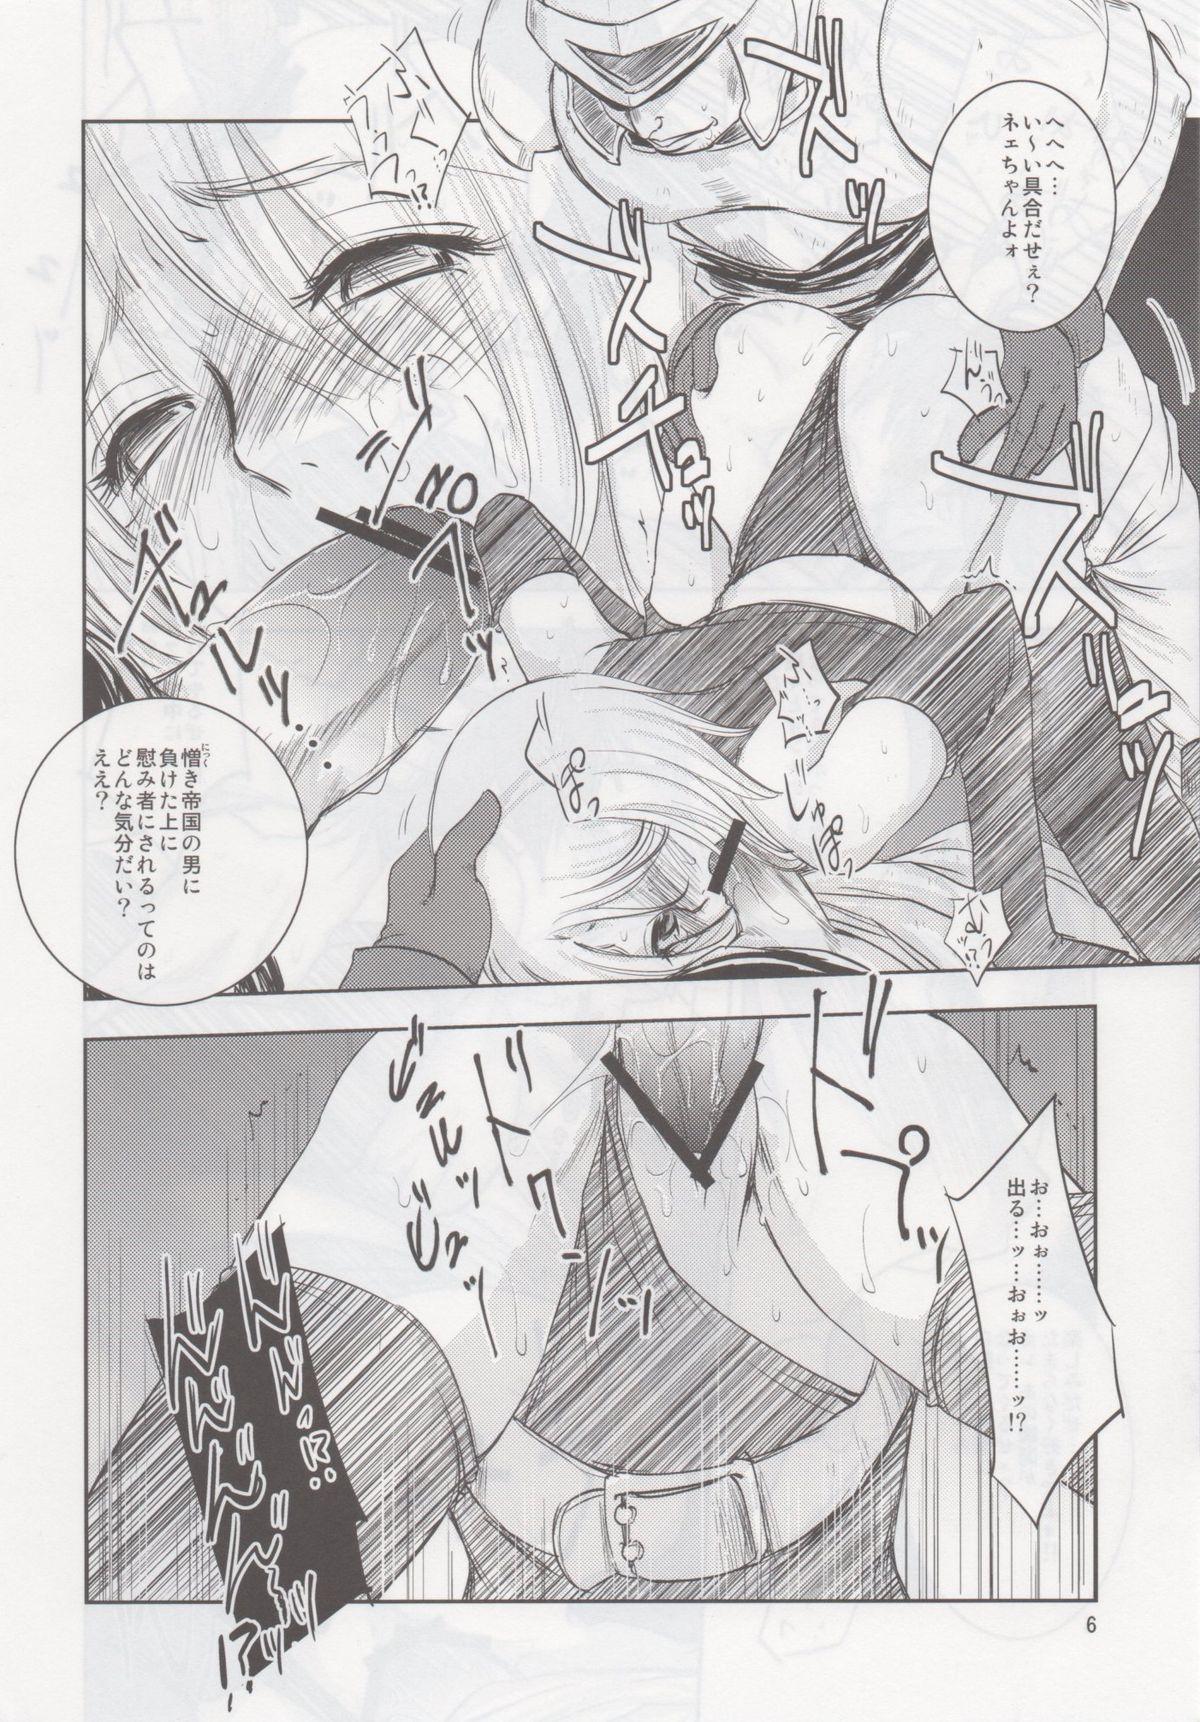 Leite GRASSEN'S WAR ANOTHER STORY Ex #02 Node Shinkou II Muscular - Page 5